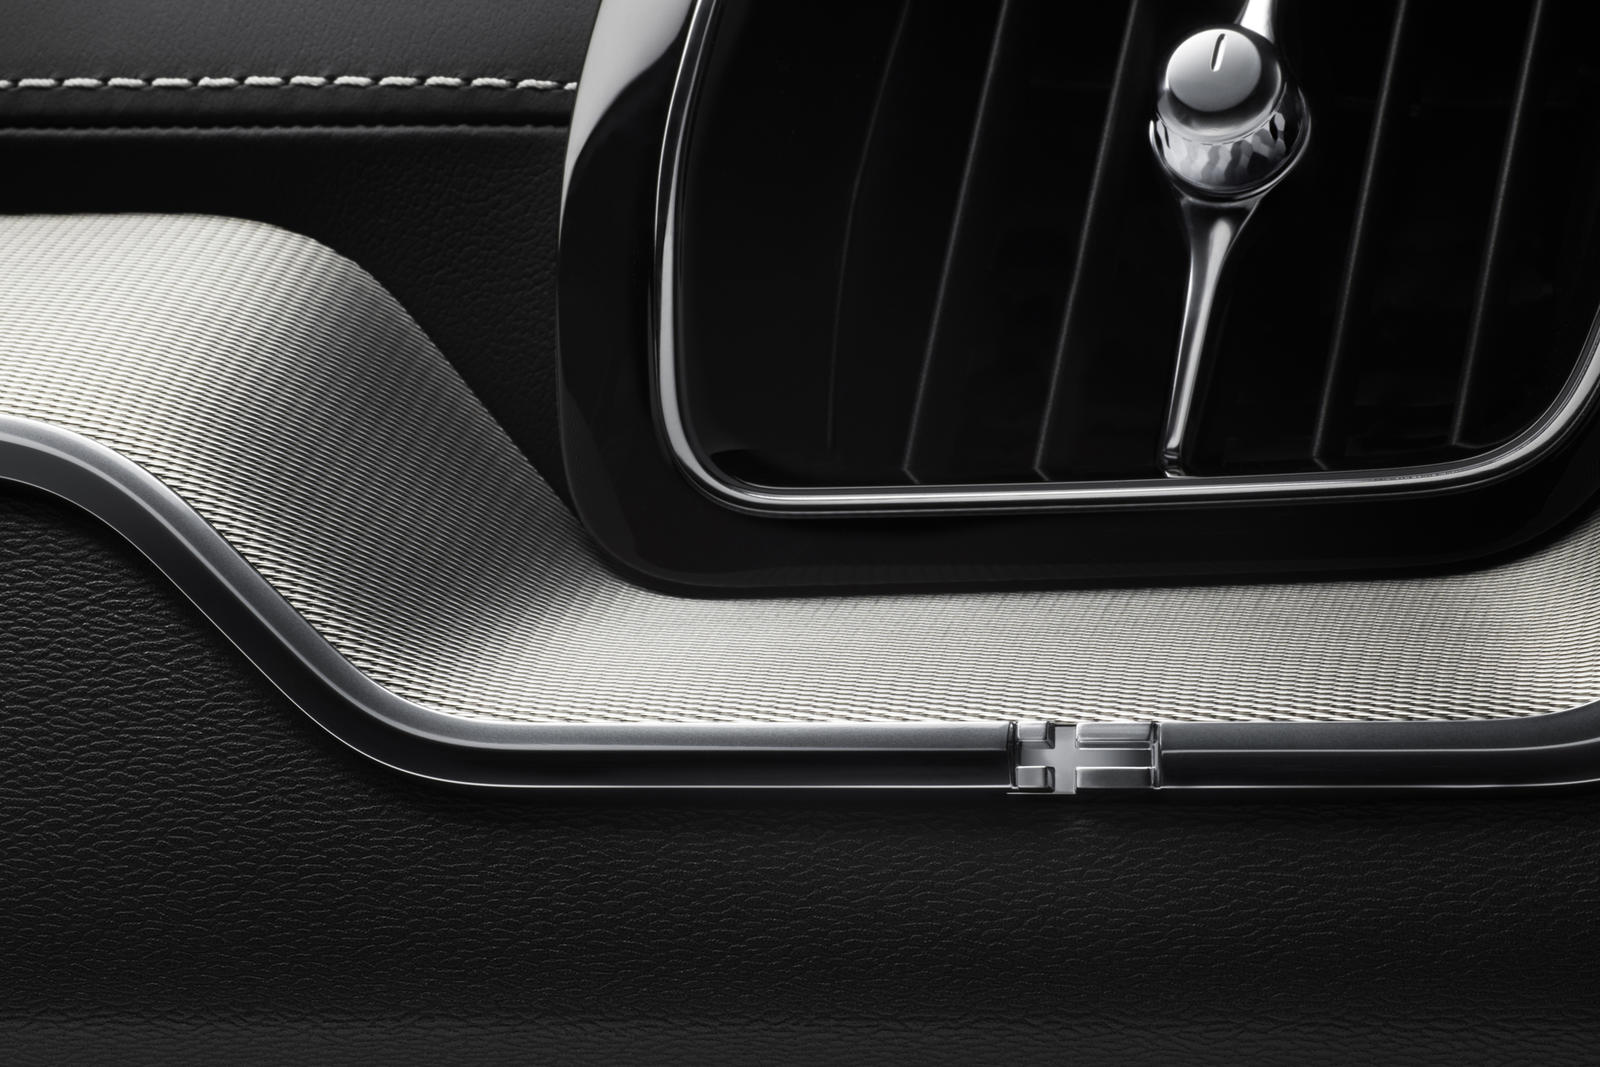 05_The new Volvo XC60 – interior